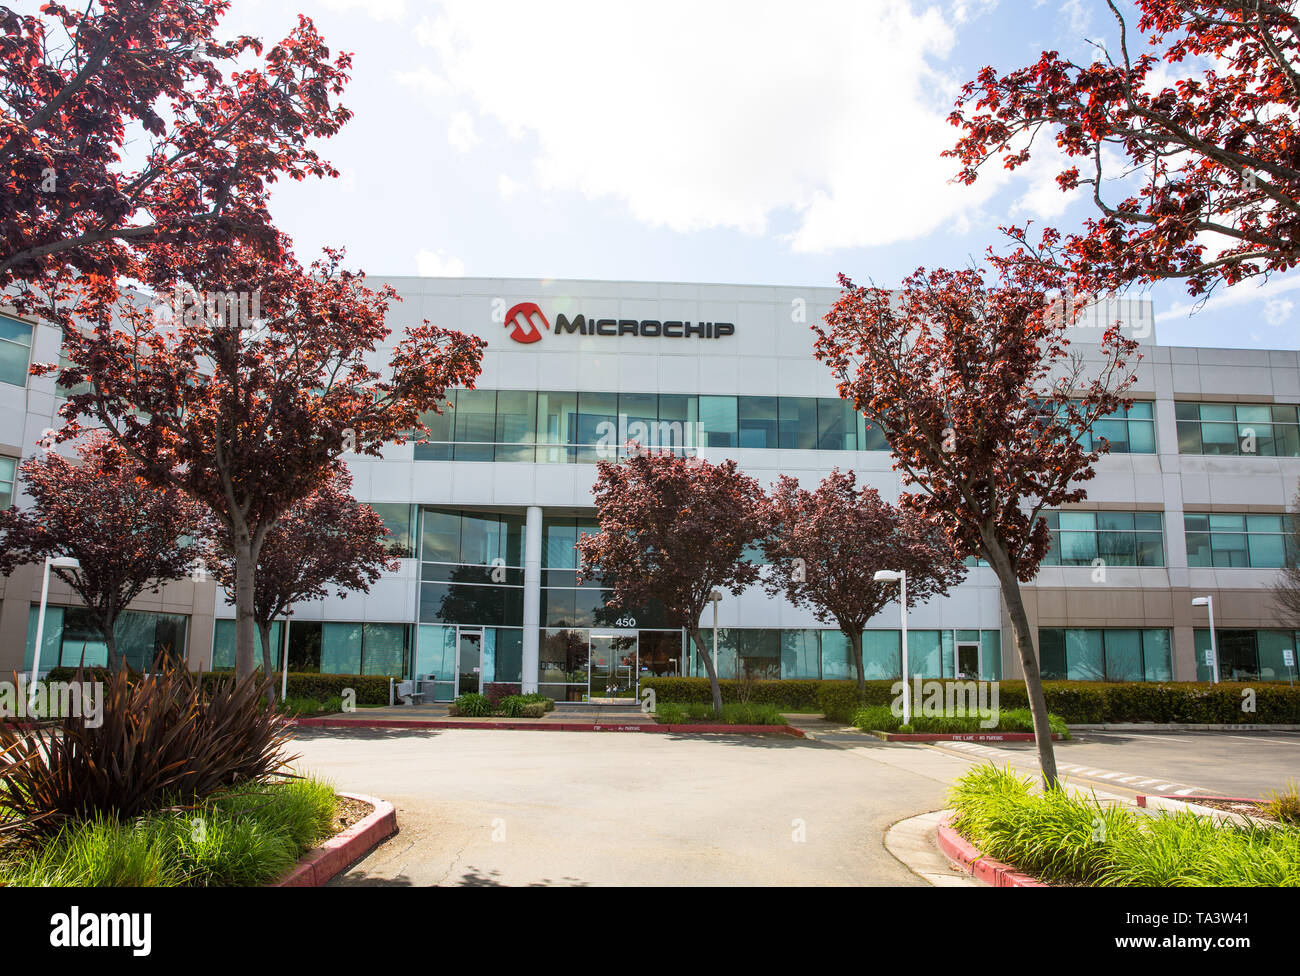 San Jose, CA/USA - 26. März 2019: Microchip Technology Inc. ist ein US-amerikanischer Hersteller von Microcontroller, mixed-signal-, Analog- und Flash-IP integr Stockfoto